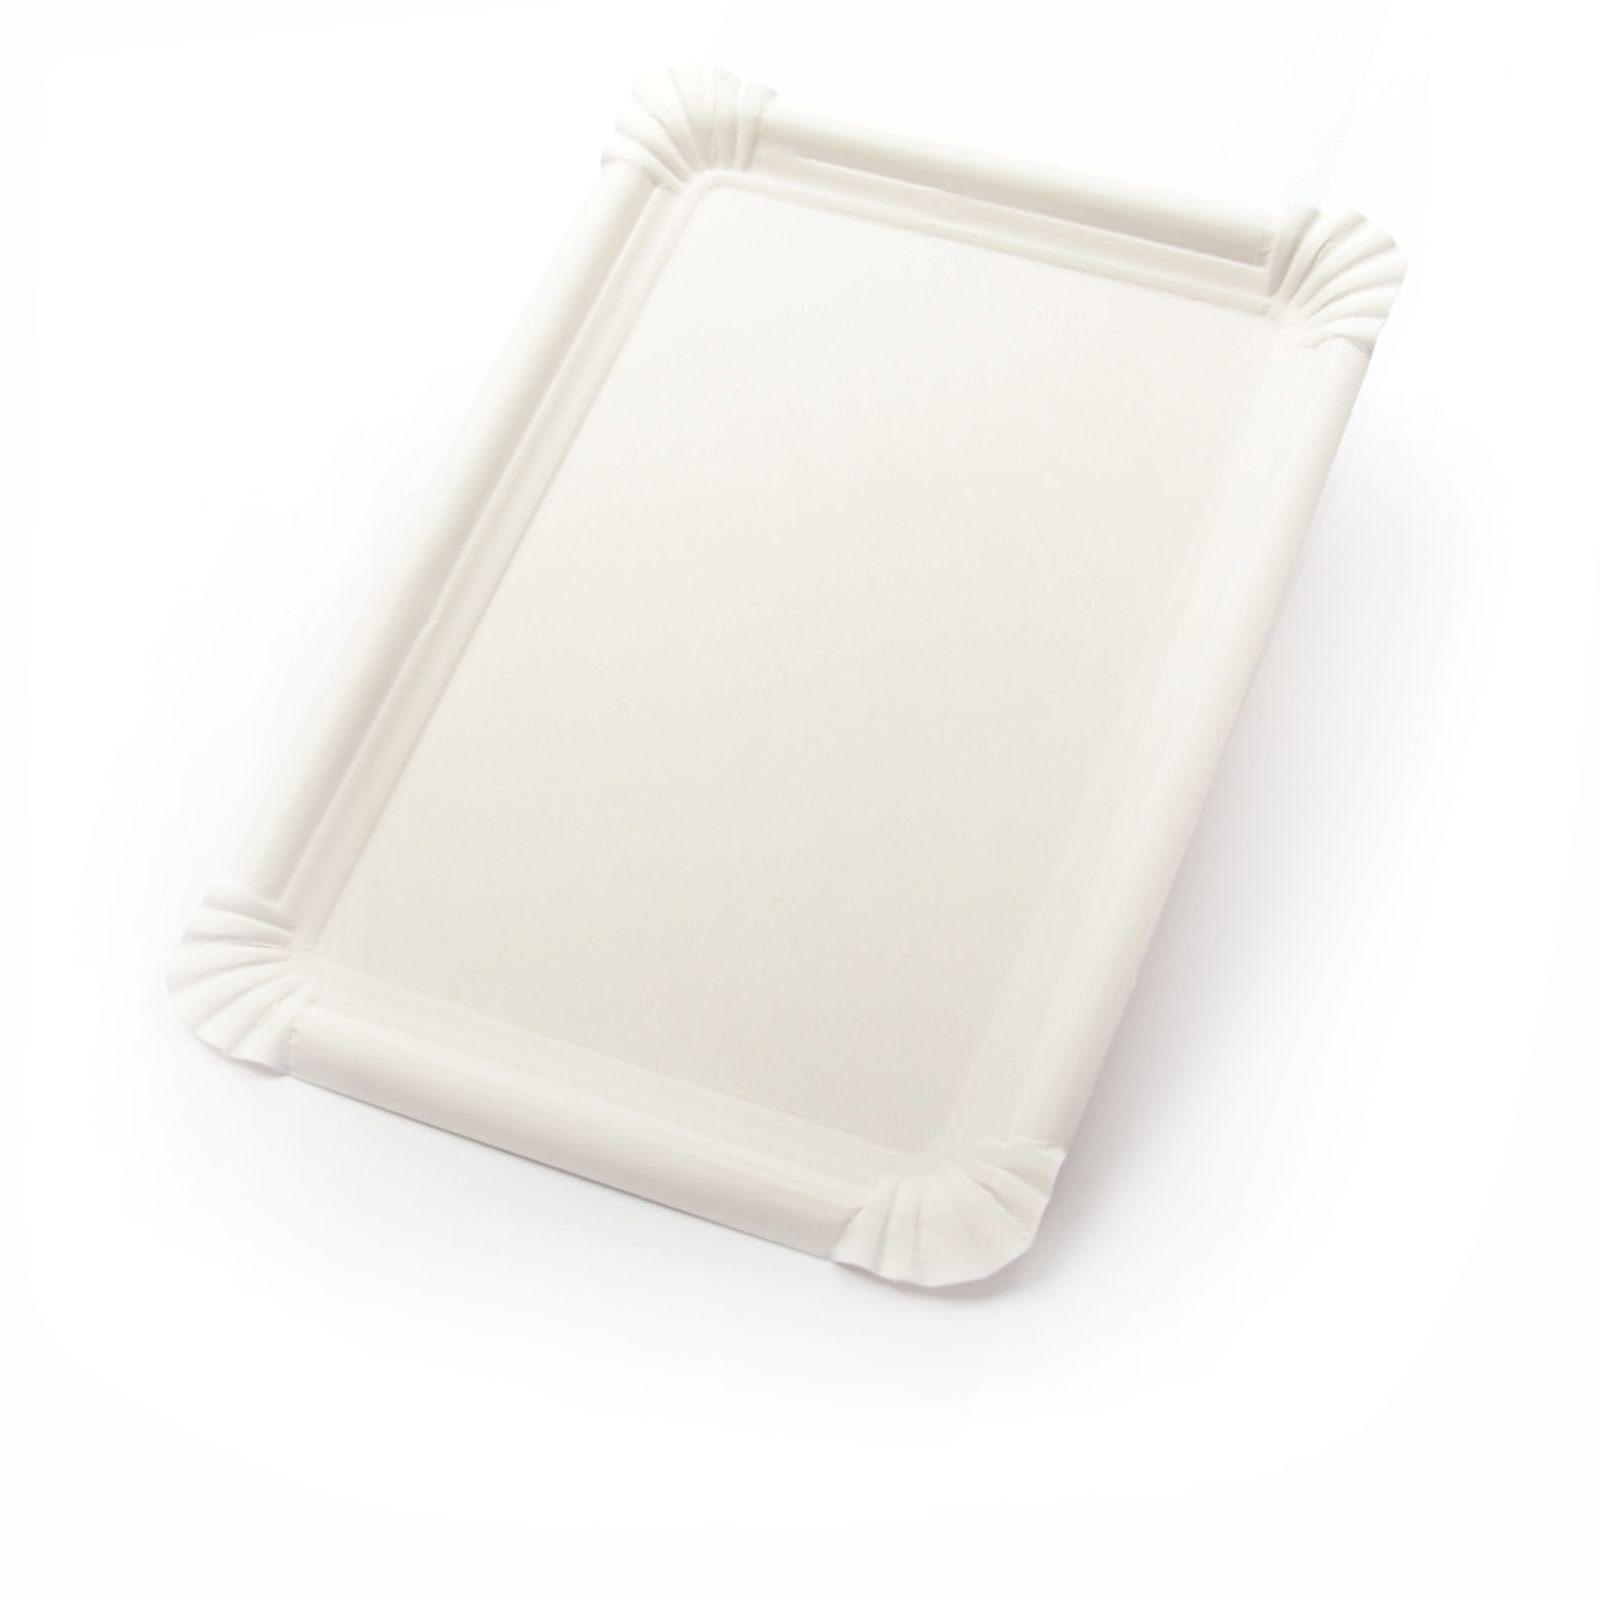 Einwegteller 250 Stück Pappteller rechteckig (18×26 cm), ohne Beschichtung, weiß, Frischfaser Kuchenteller Kuchenunterleger Tortenteller Imbissteller